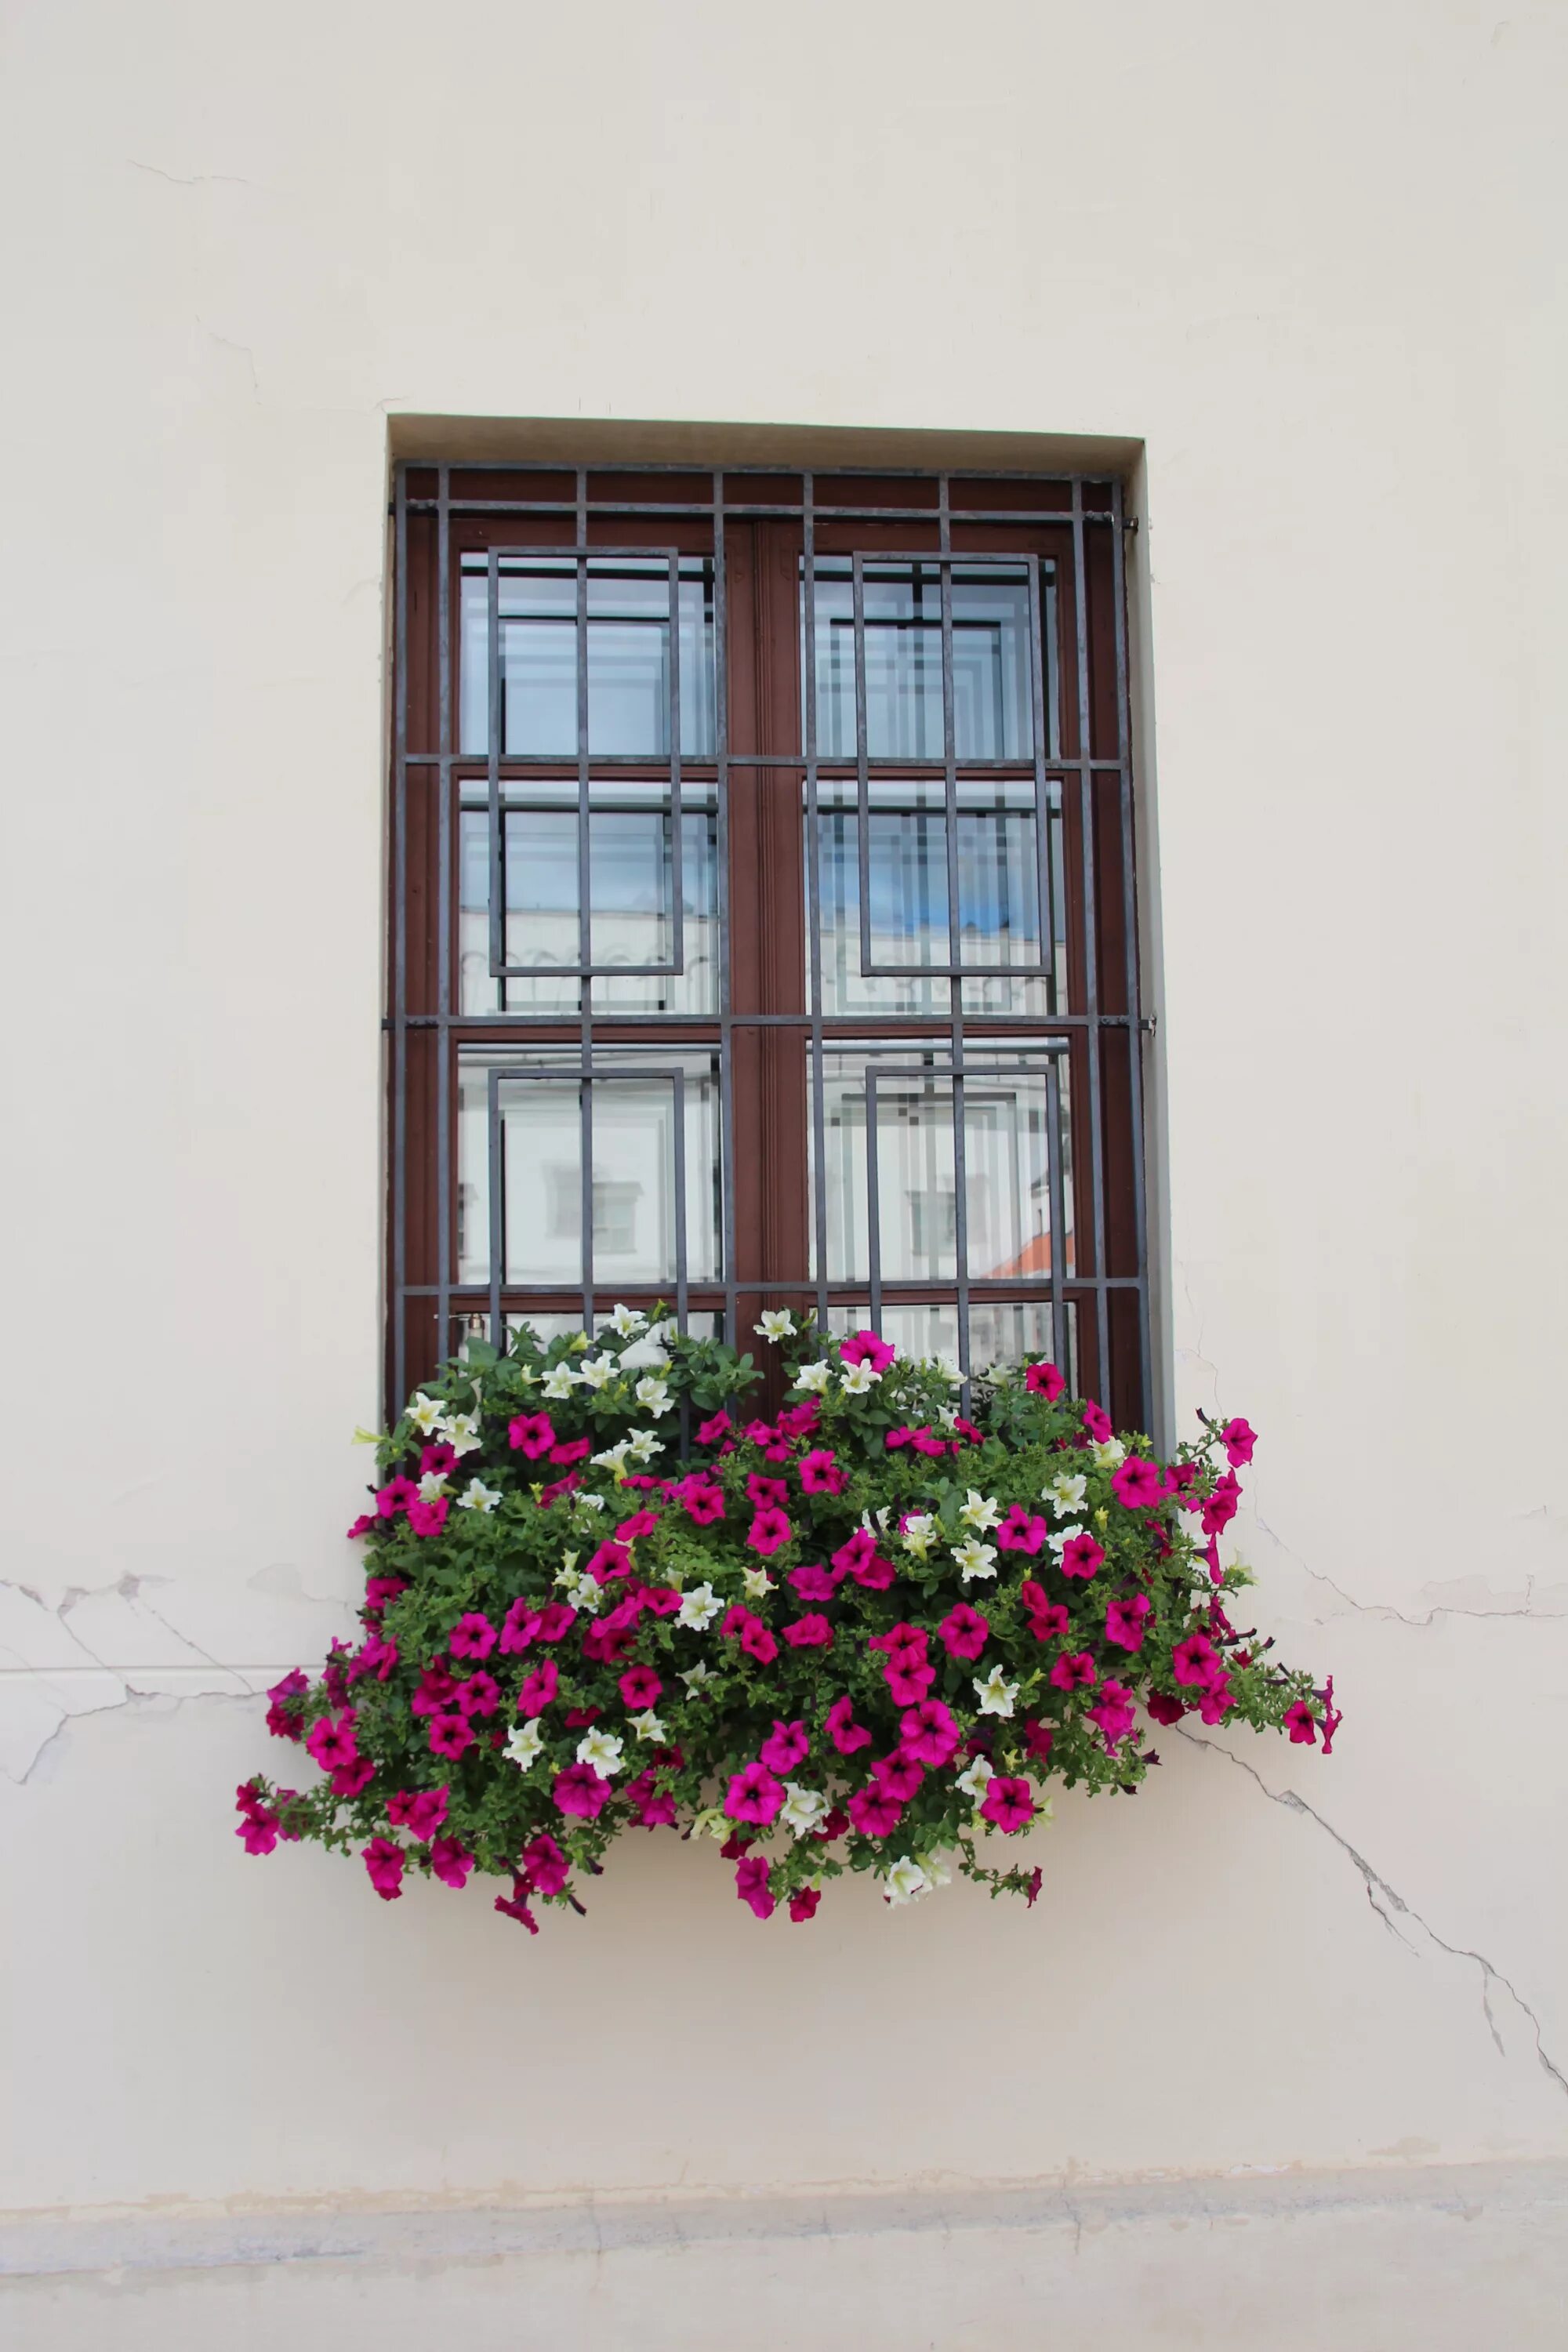 Подарить цветы в окно. Цветы на окне. Цветы на балконе. Окно в цветах. Цветы на окнах снаружи.